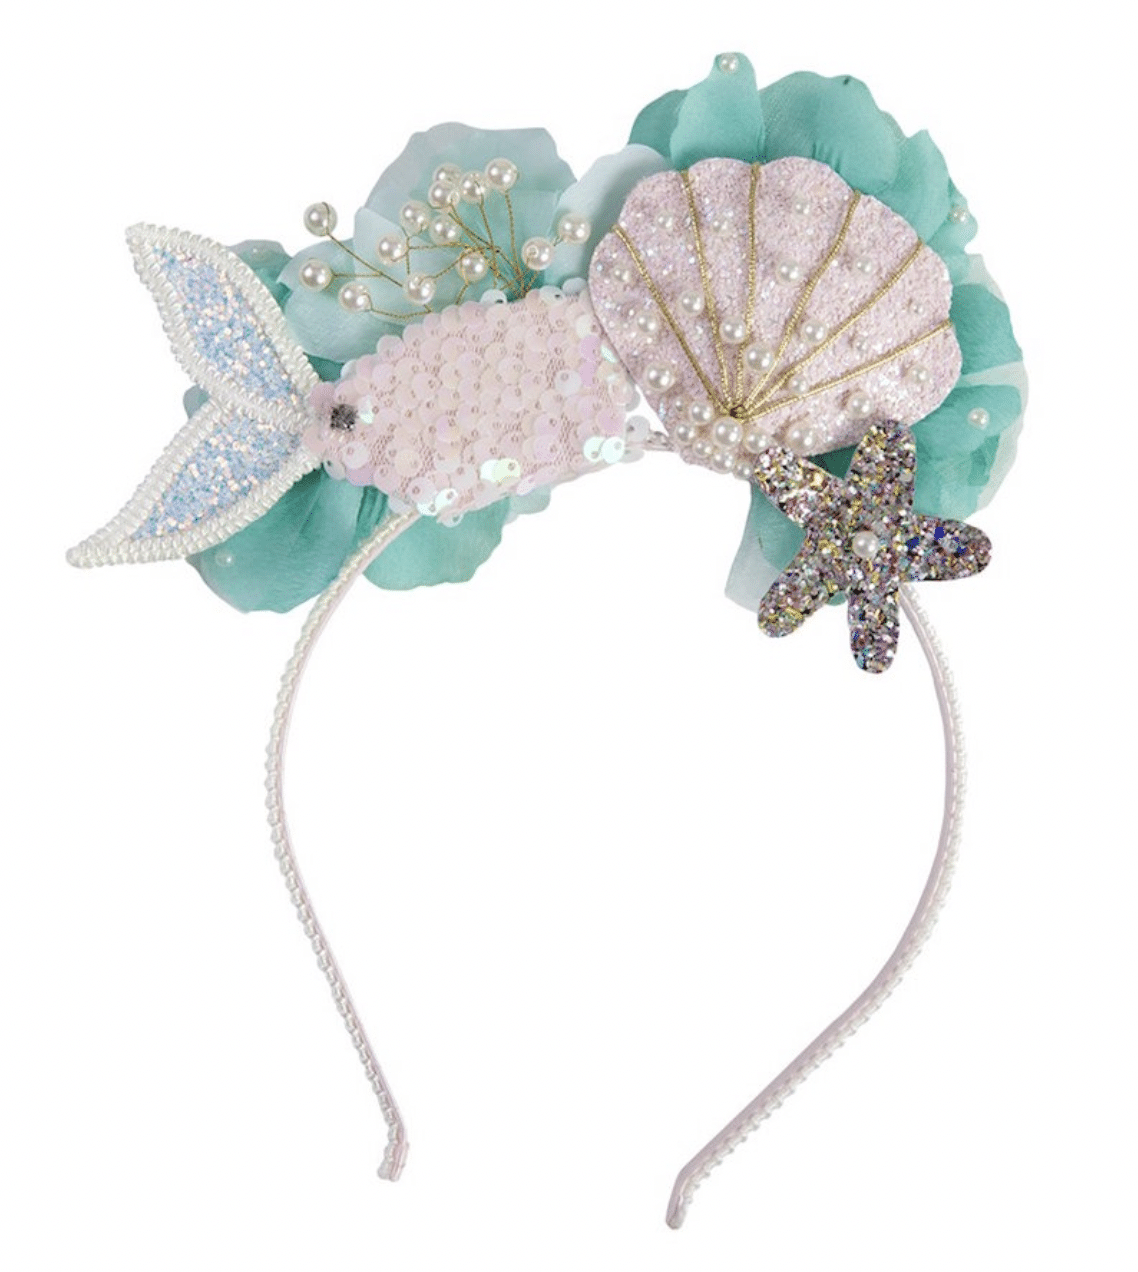 mermaid-birthday-party-ideas-headband